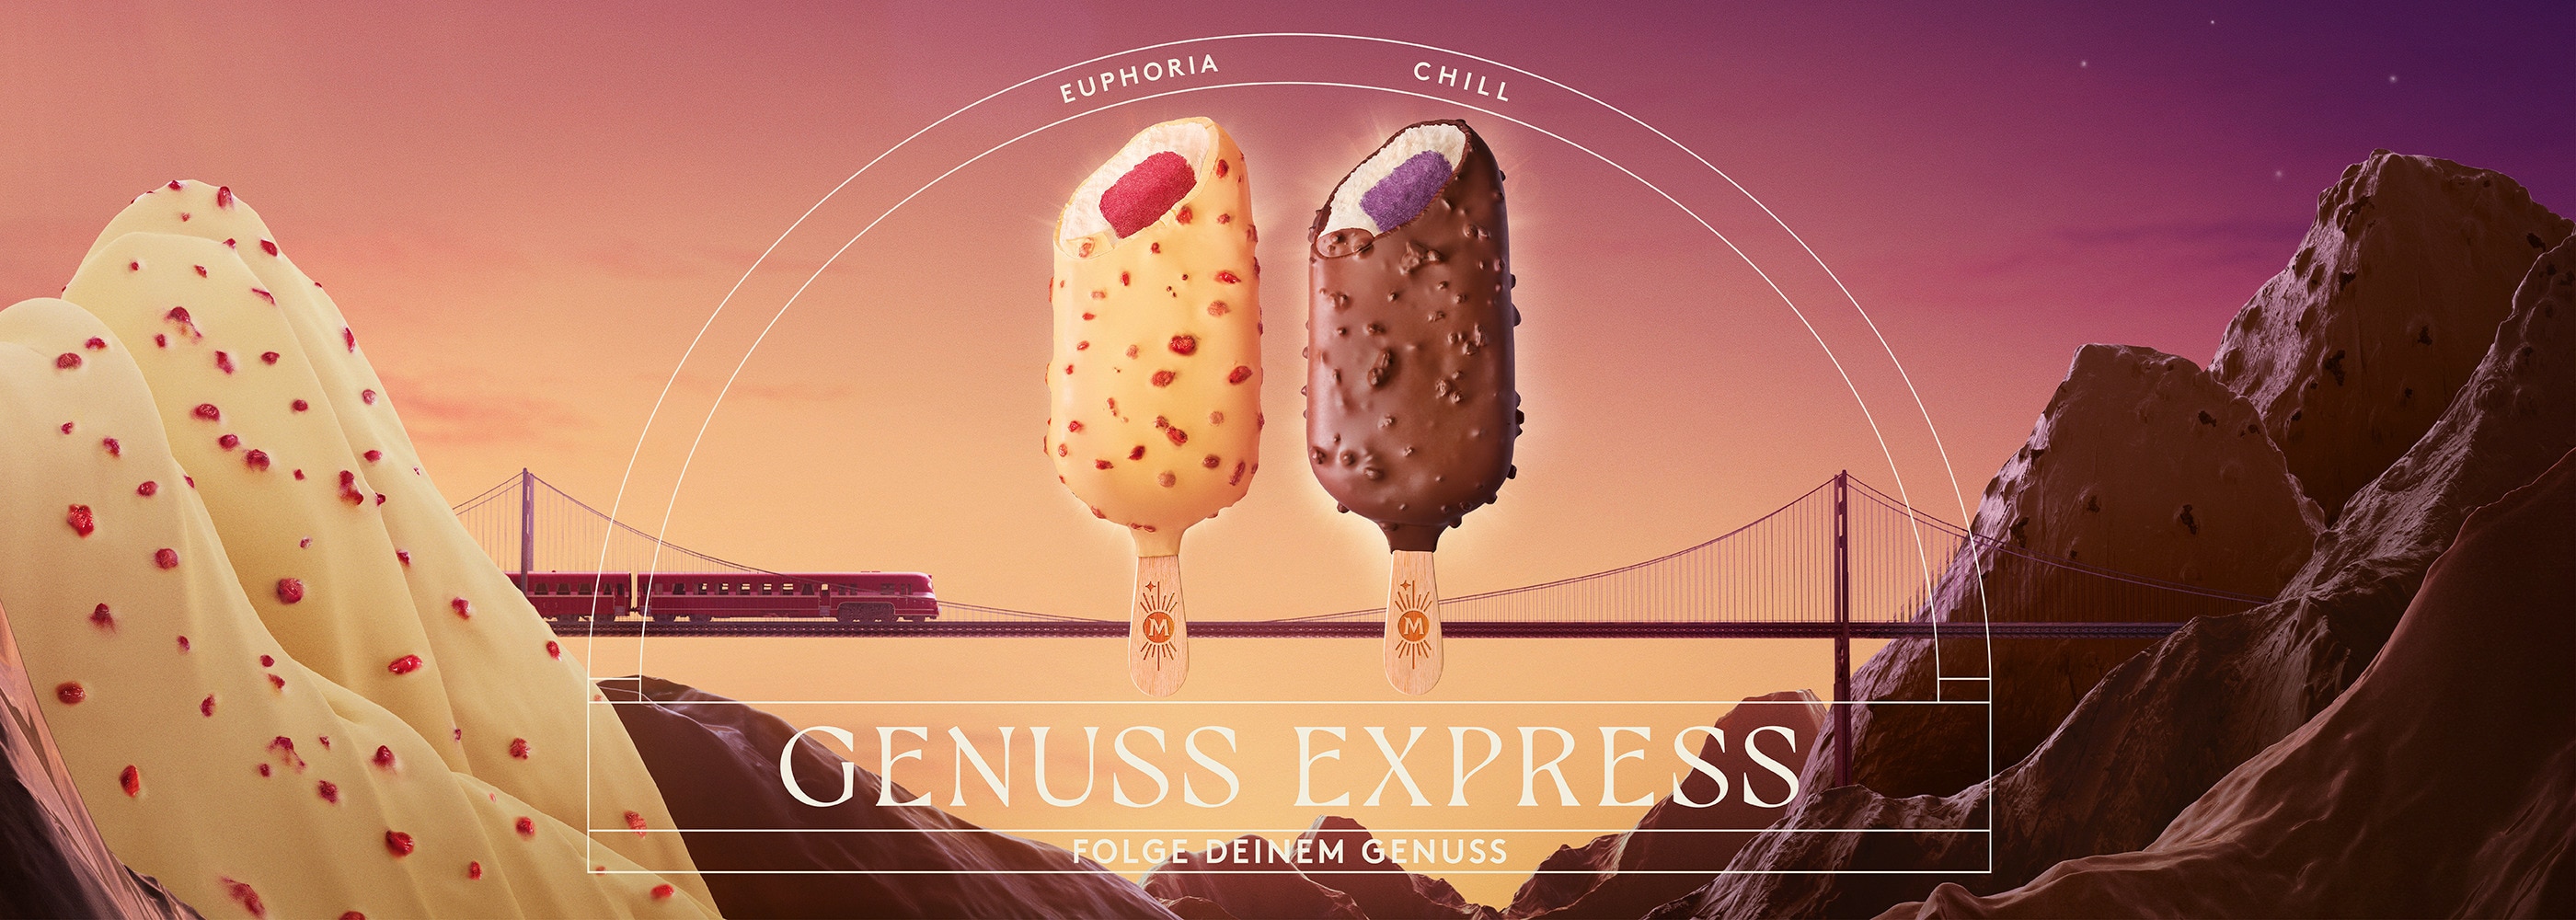 Die neuen Produkte Magnum Euphoria und Chill auf einer Landschaft aus Schokolade, Sorbet und Eis. Text: Genuss Express; Folge deinem Genuss